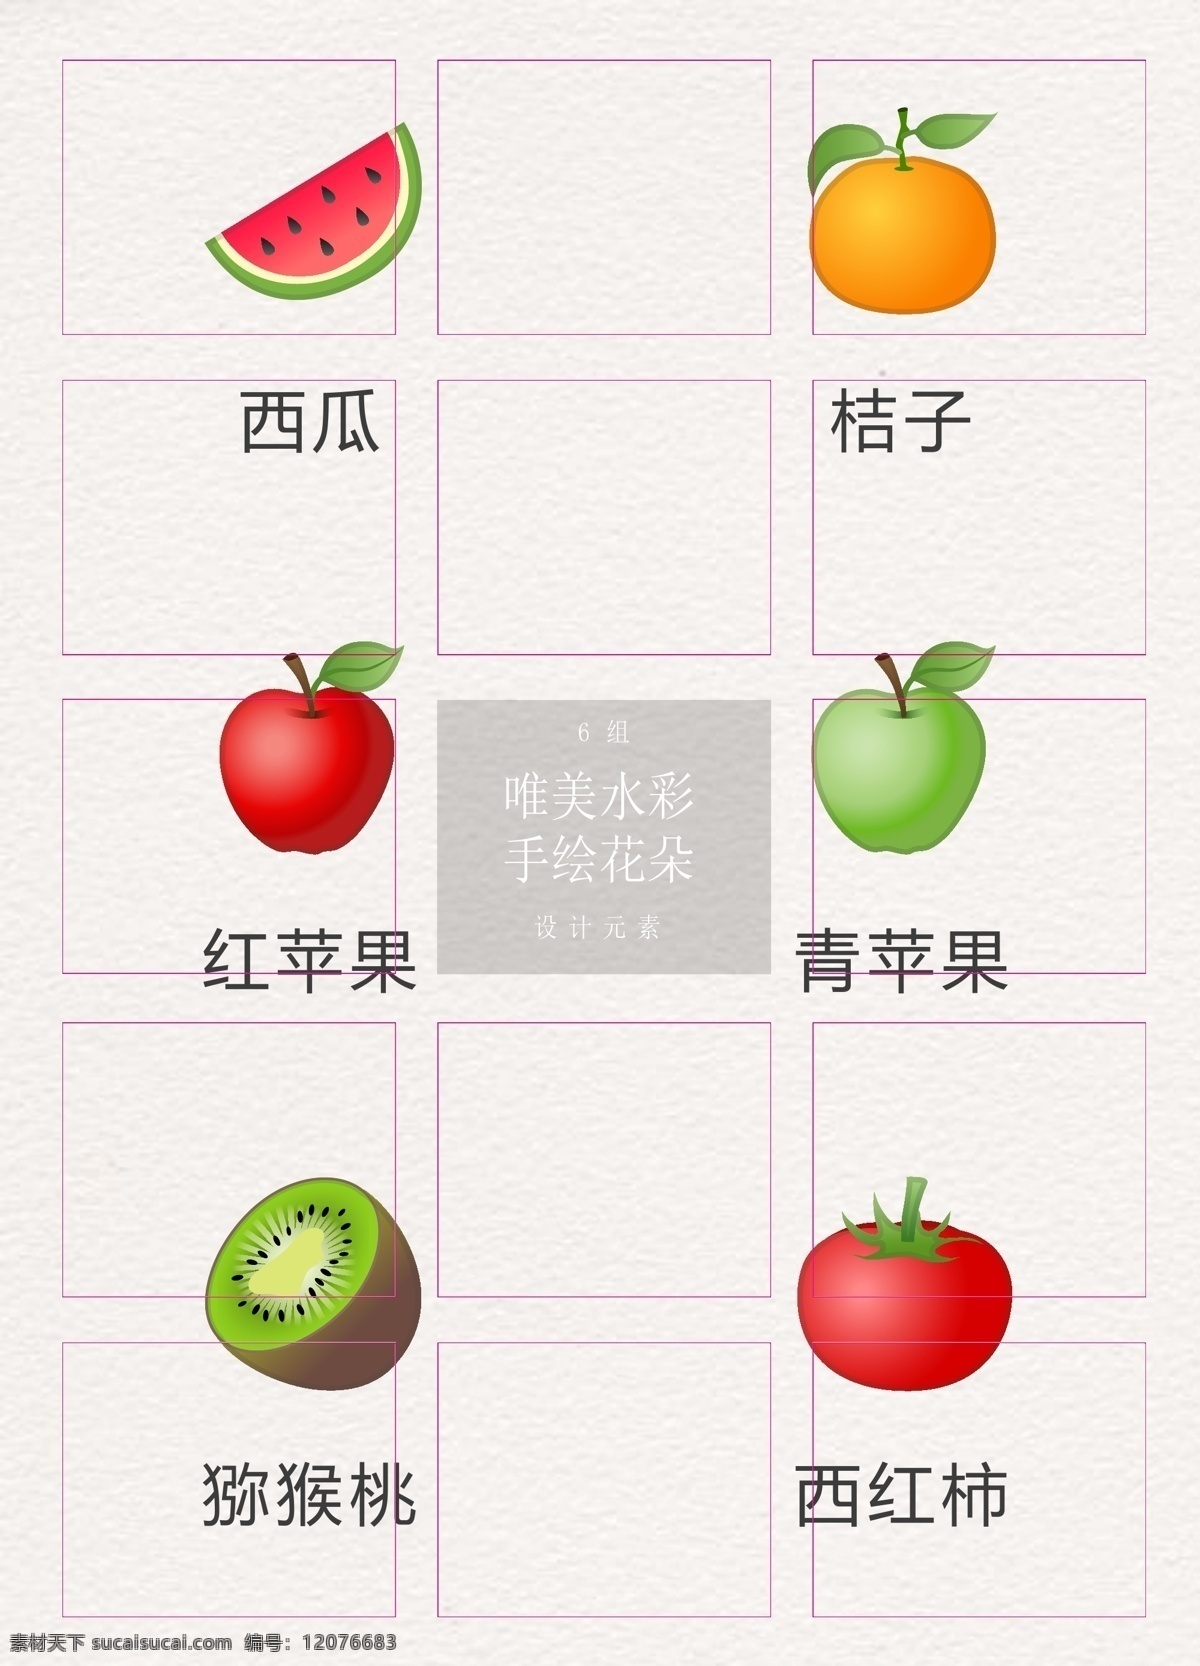 卡通 手绘 蔬果 元素 矢量图 西瓜 蔬菜 西红柿 蔬果元素 水果 桔子 红苹果 青苹果 泥猴桃